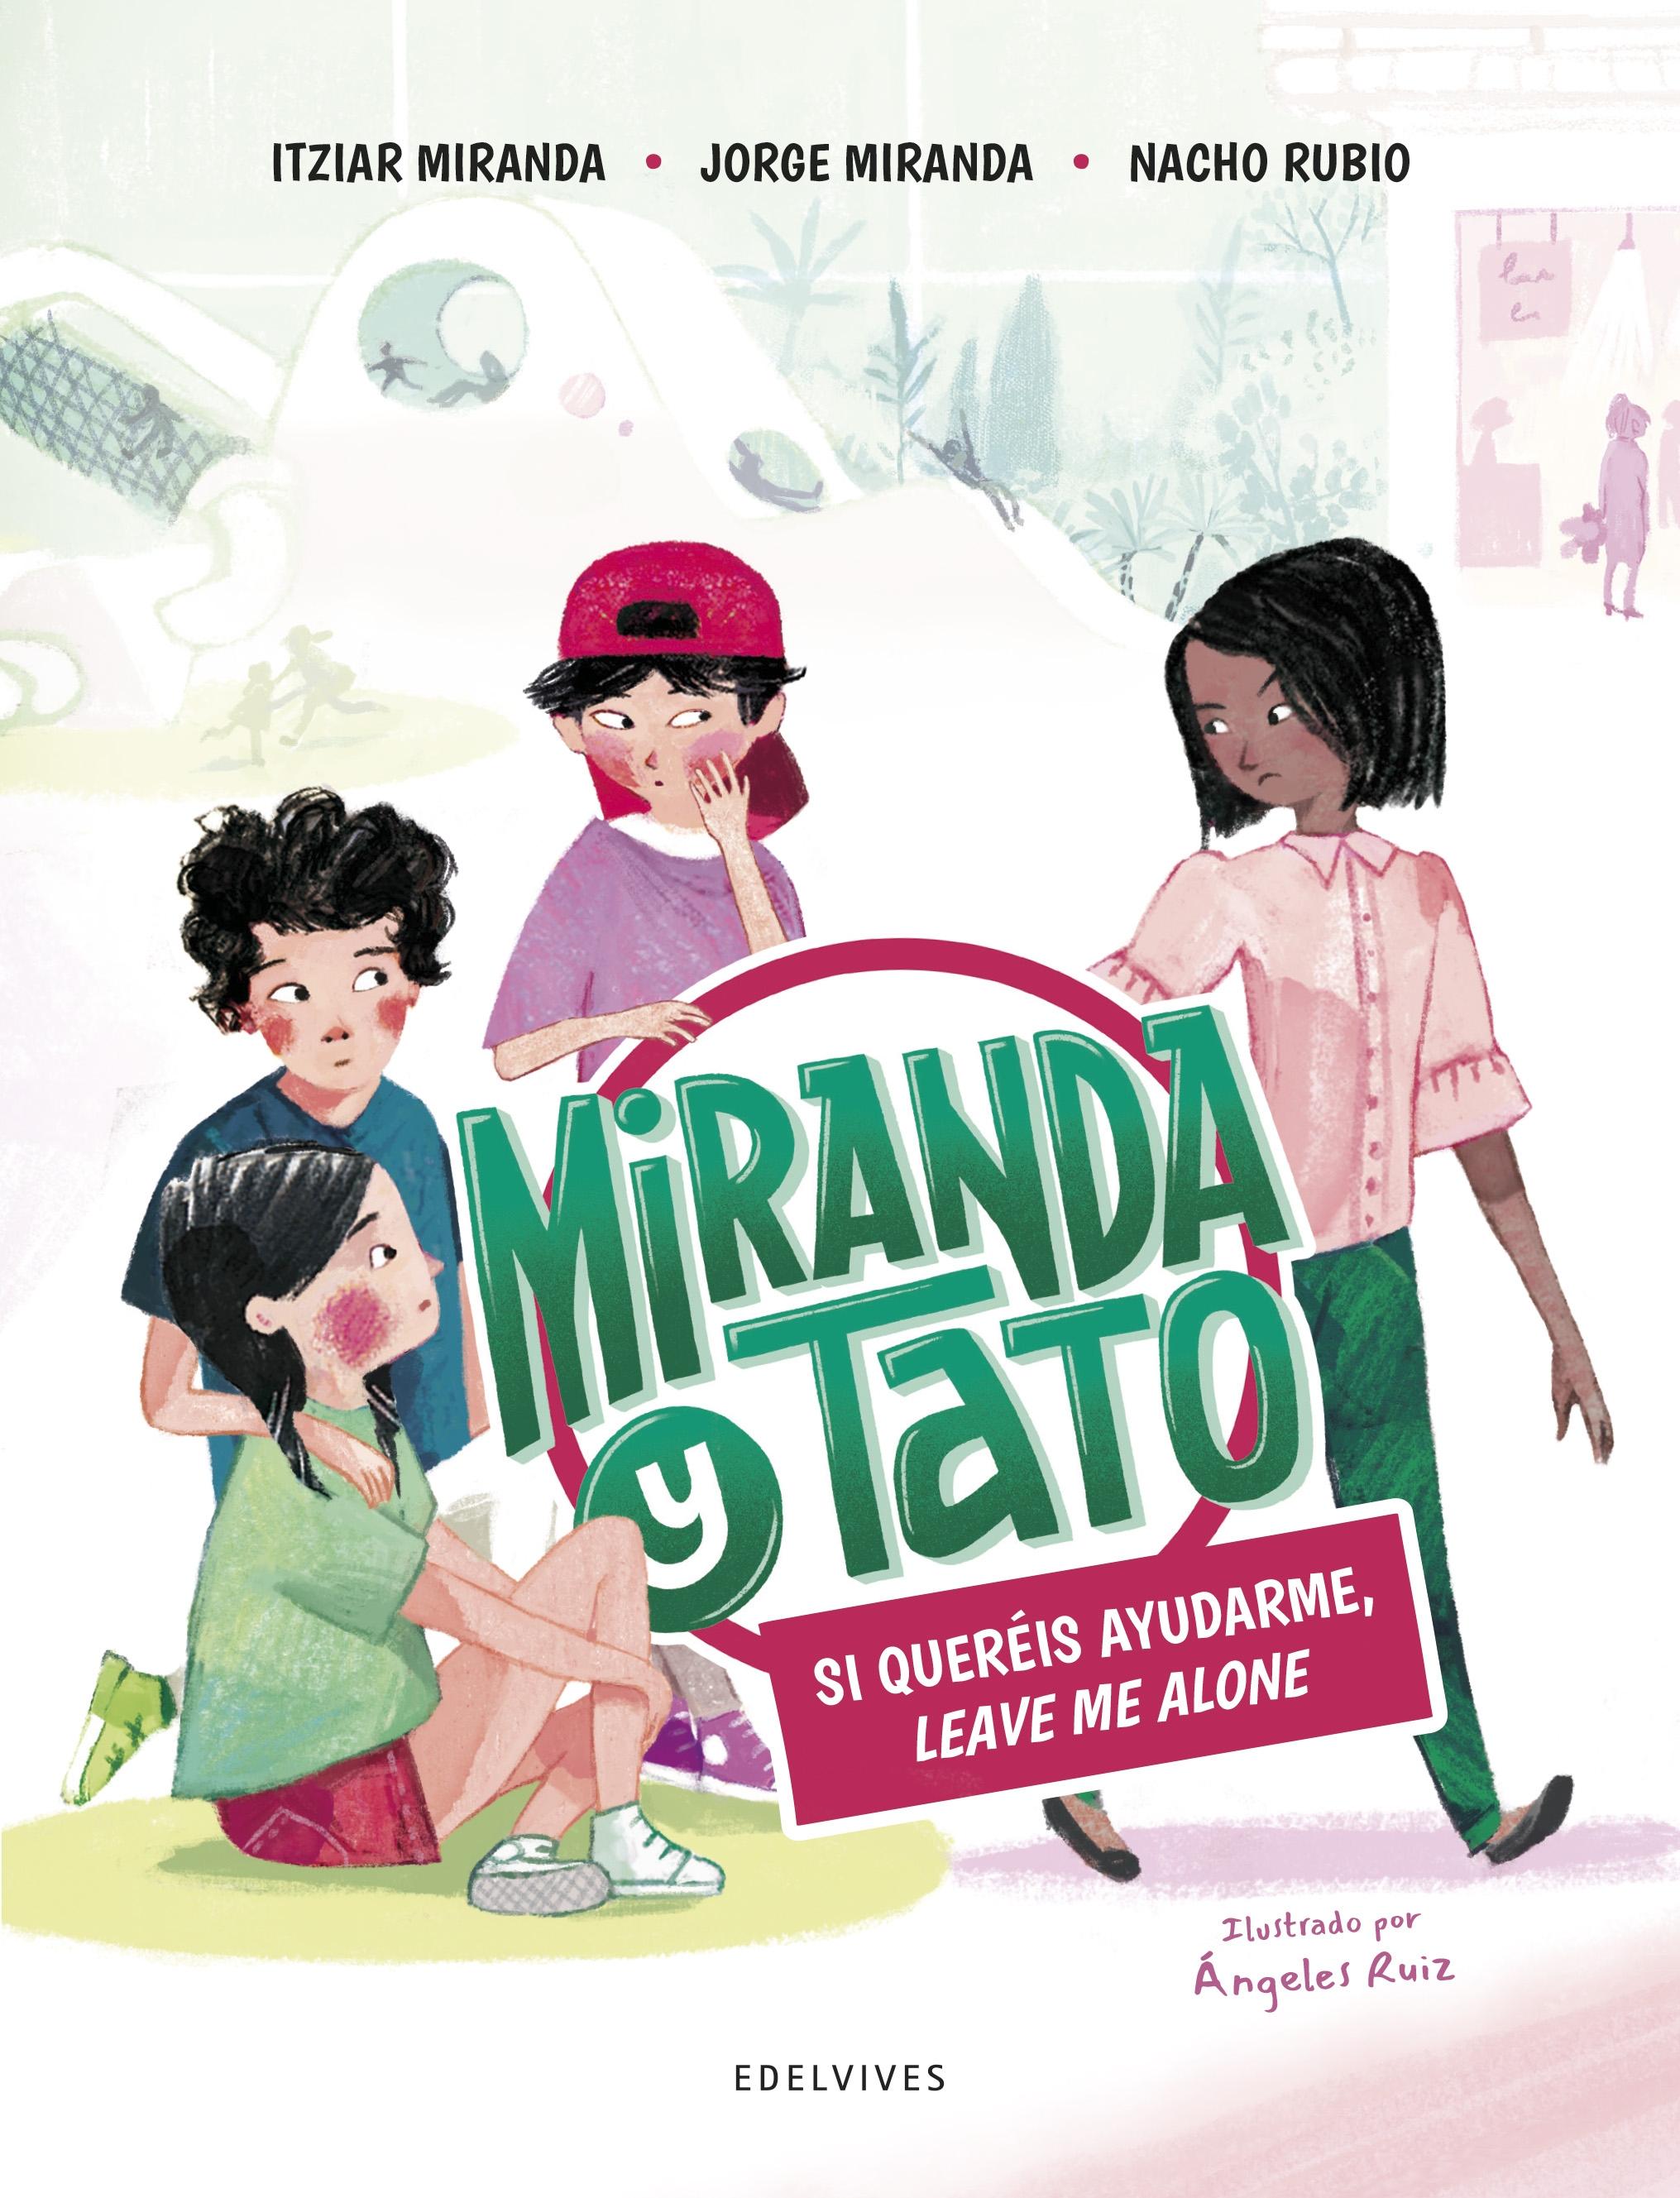 Miranda y Tato 2 "Si queréis ayudarme leave me alone". 